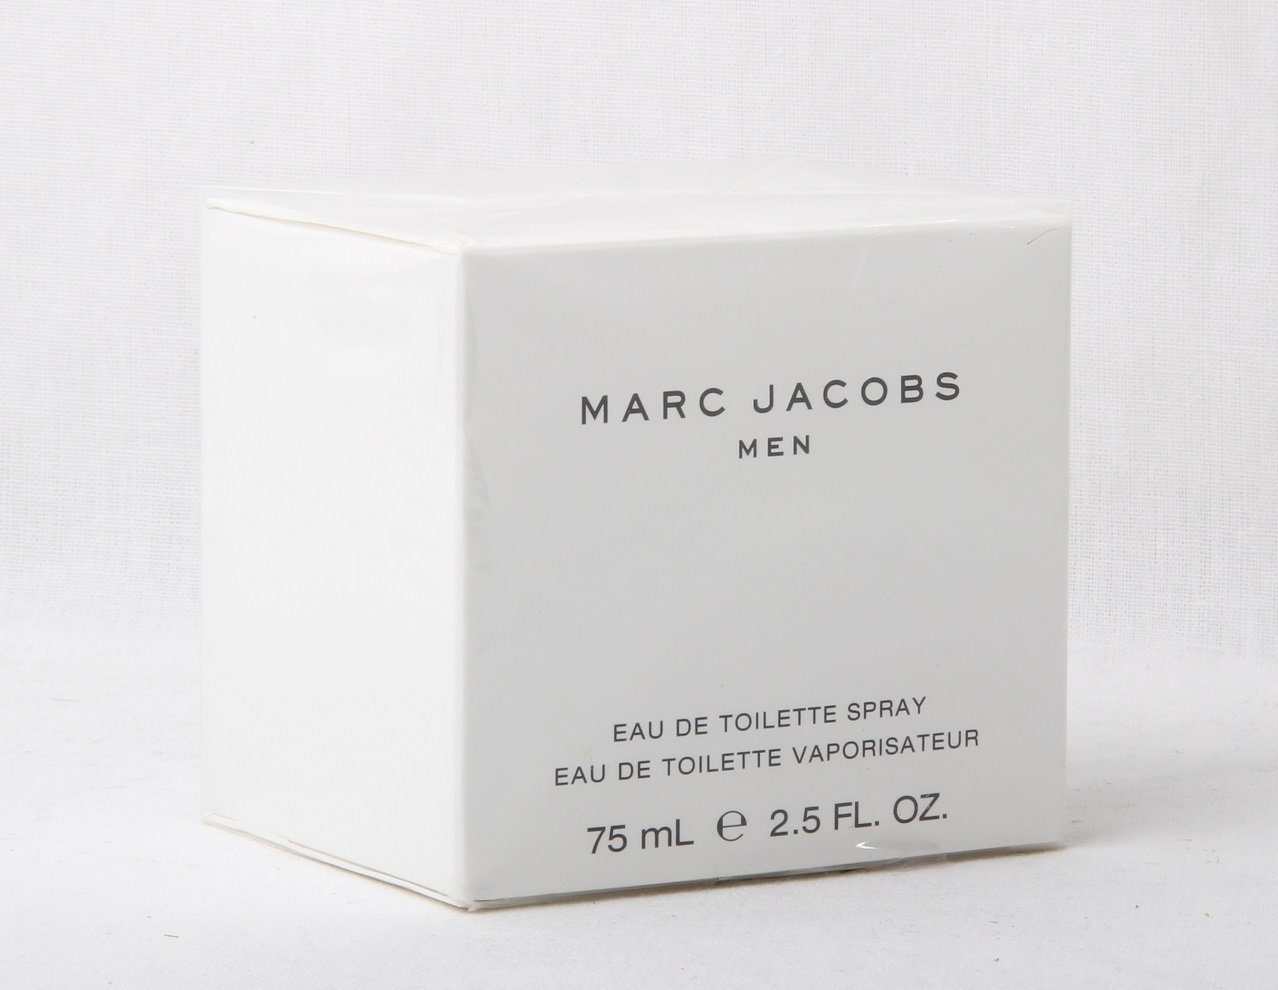 MARC JACOBS Eau de Toilette Marc Jacobs Men Eau de Toilette Spray 75ml